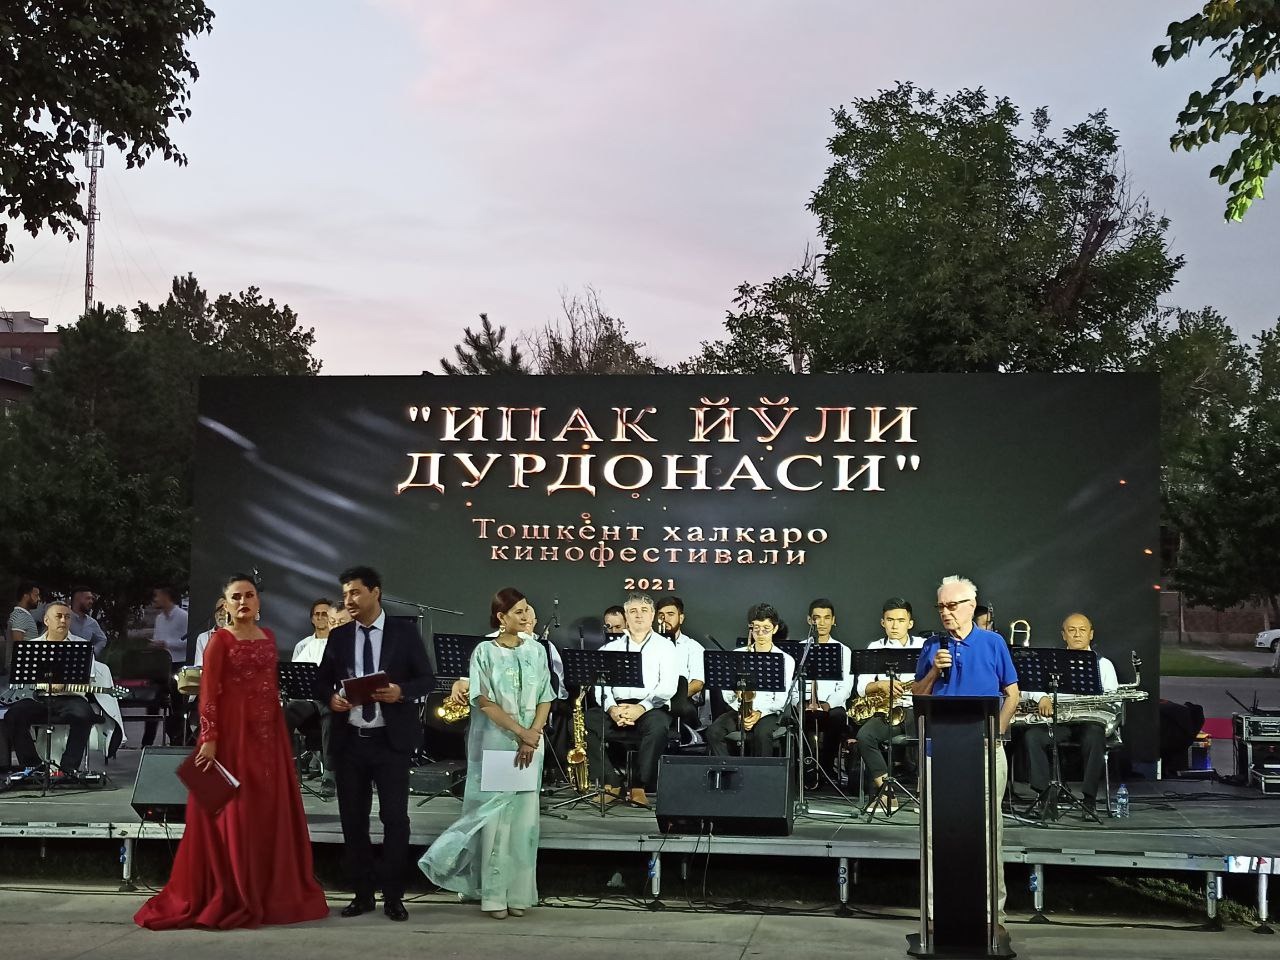 President has signed a Resolution on holding the Tashkent International Film Festival